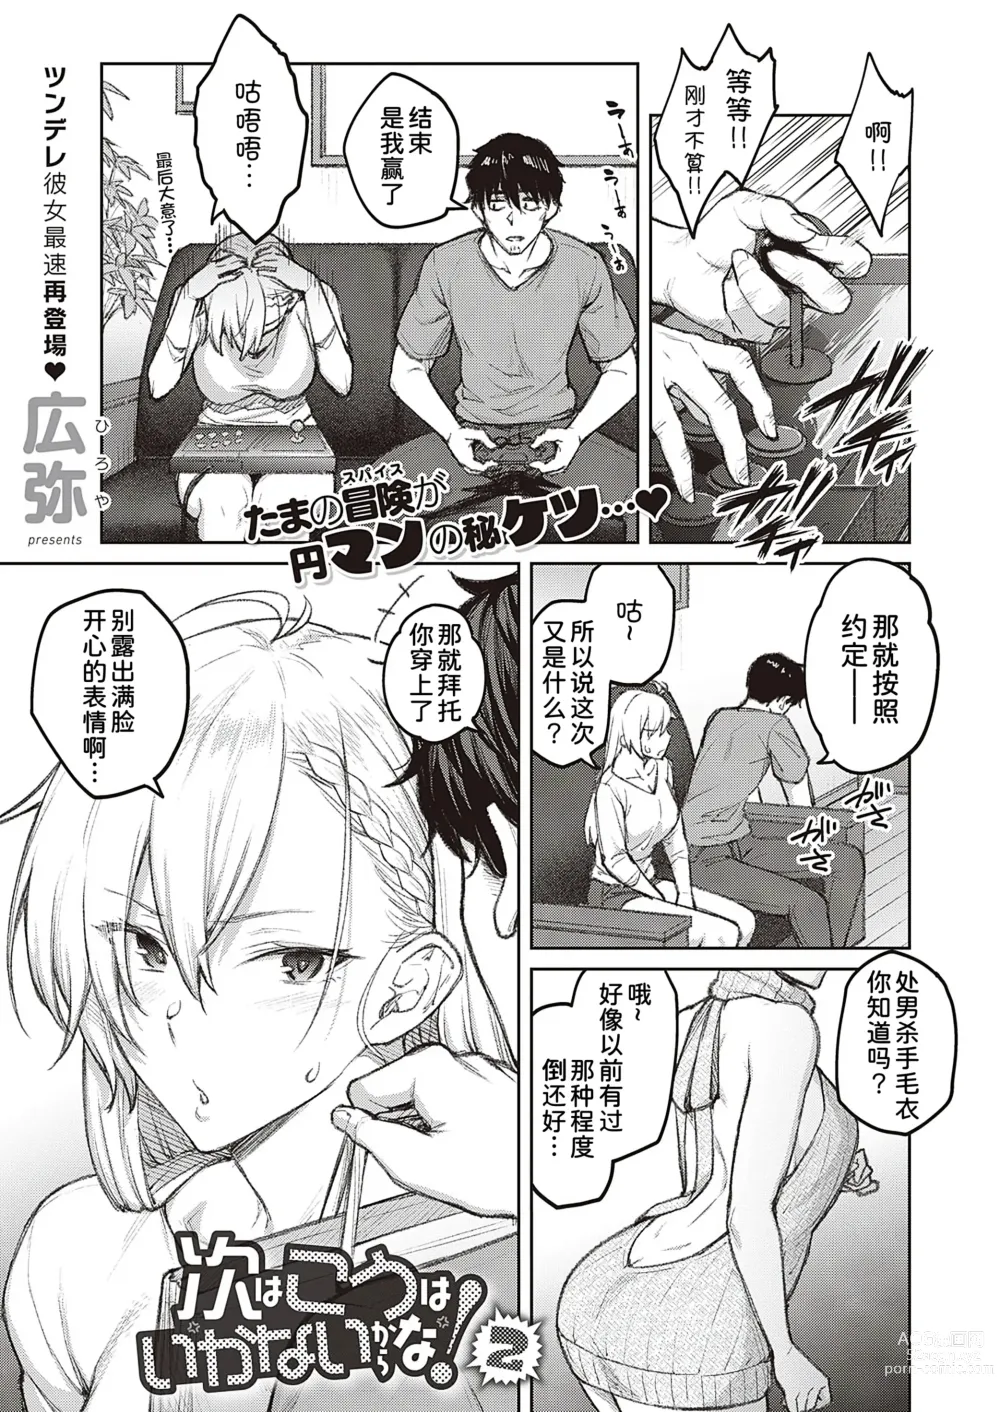 Page 2 of manga Tsugi wa Kou wa Ikanai kara na!2